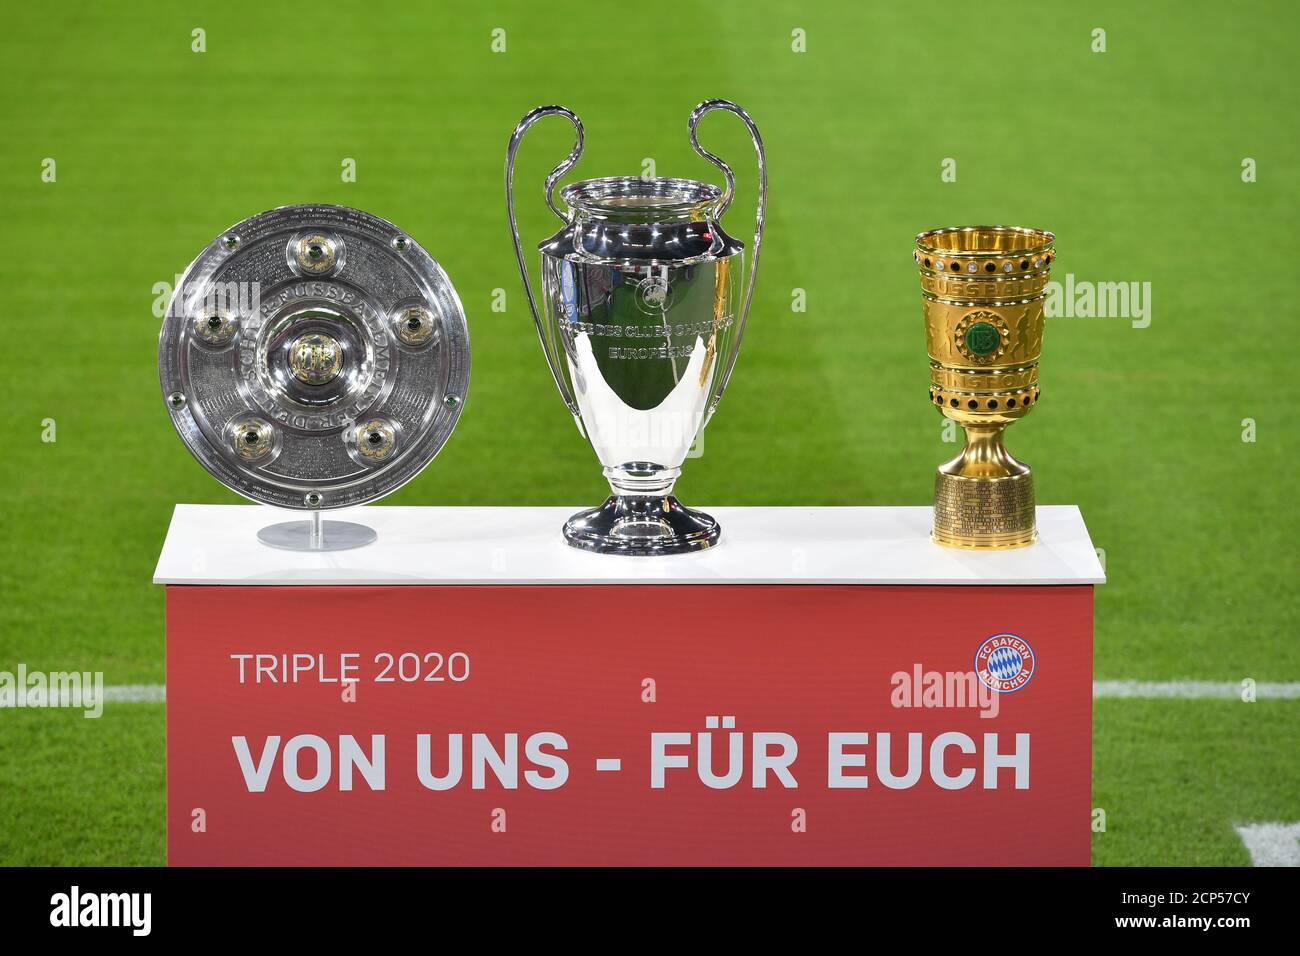 Präsentiert werden der Dreifachcup, Meisterschaftspokal, Champions League  Cup und DFB Cup. Trophäe, Pokal, Trophäe. Fußball 1. Bundesliga-Saison 2020/2021,  1 Spieltag, Spieltage01, FC Bayern München (M) - FCSchalke 04 (GE) 8-0, am  18.